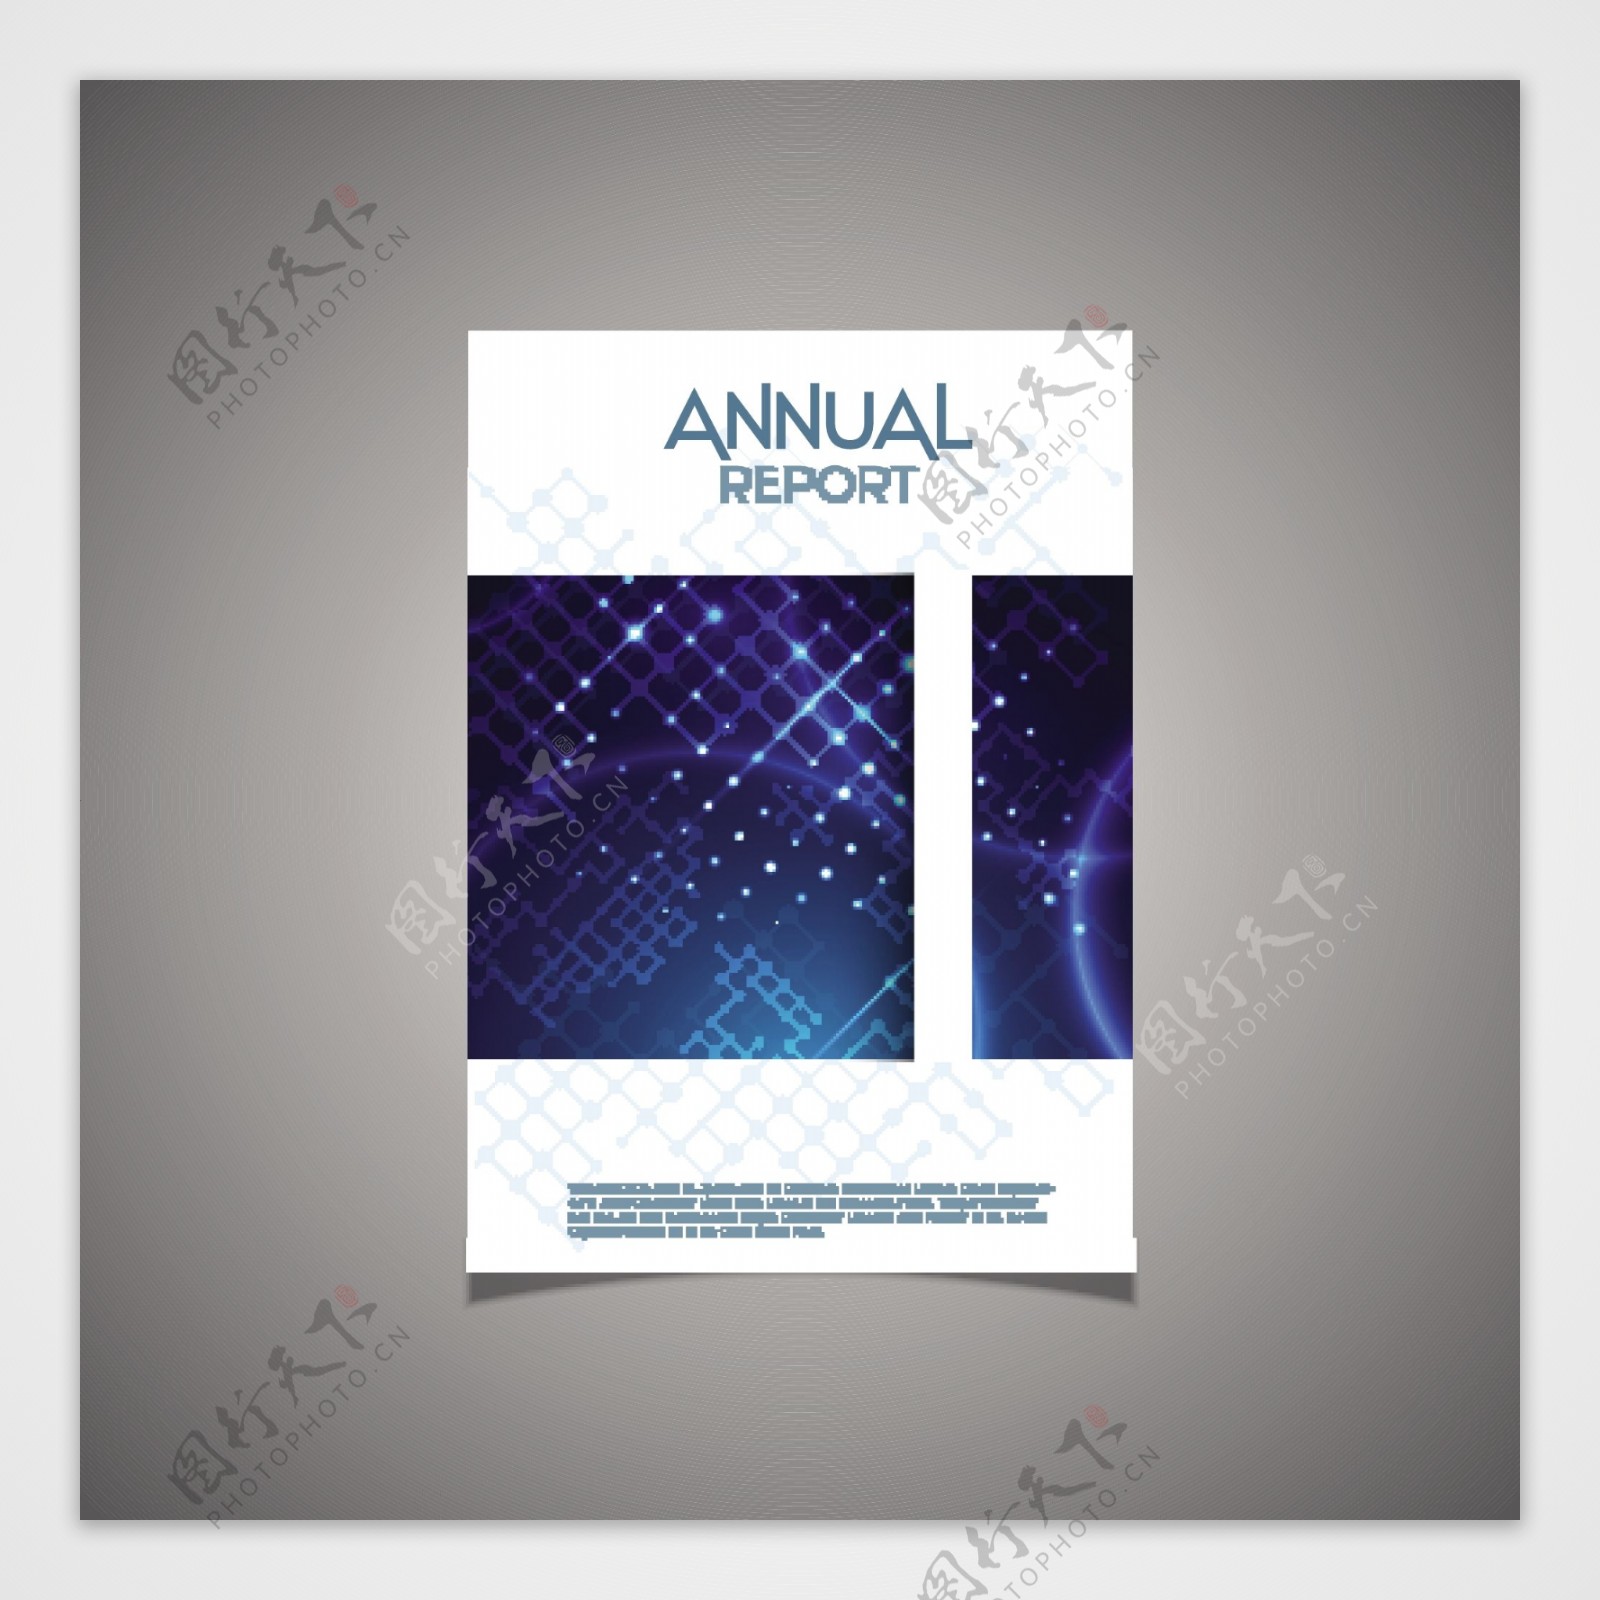 一个企业年度报告的现代封面设计